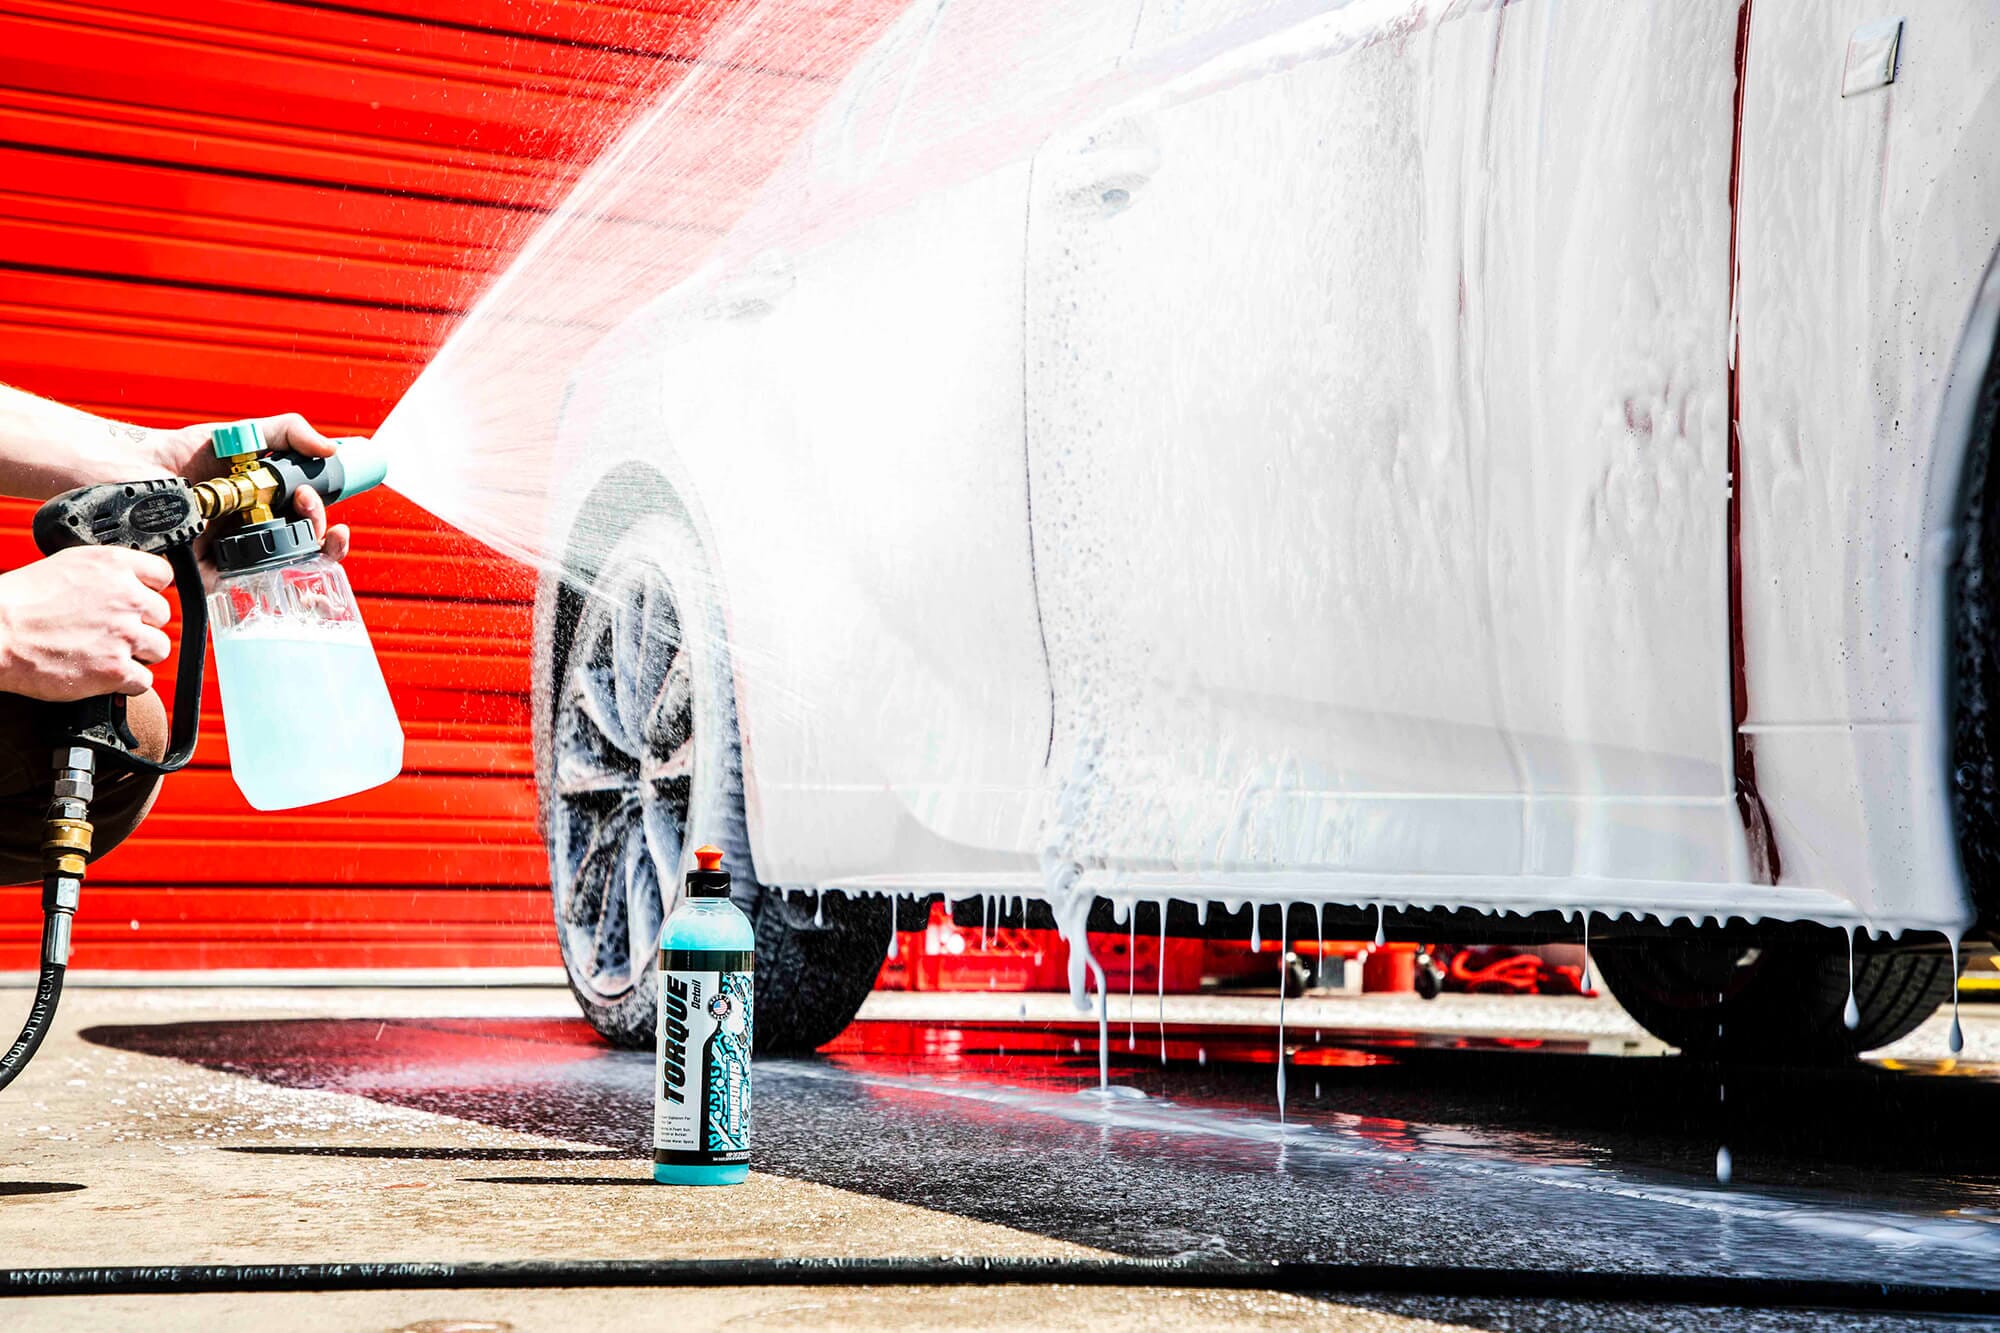 Foam Gun Car Wash Sprayer Soap Foam Blastergreenhigh Quality